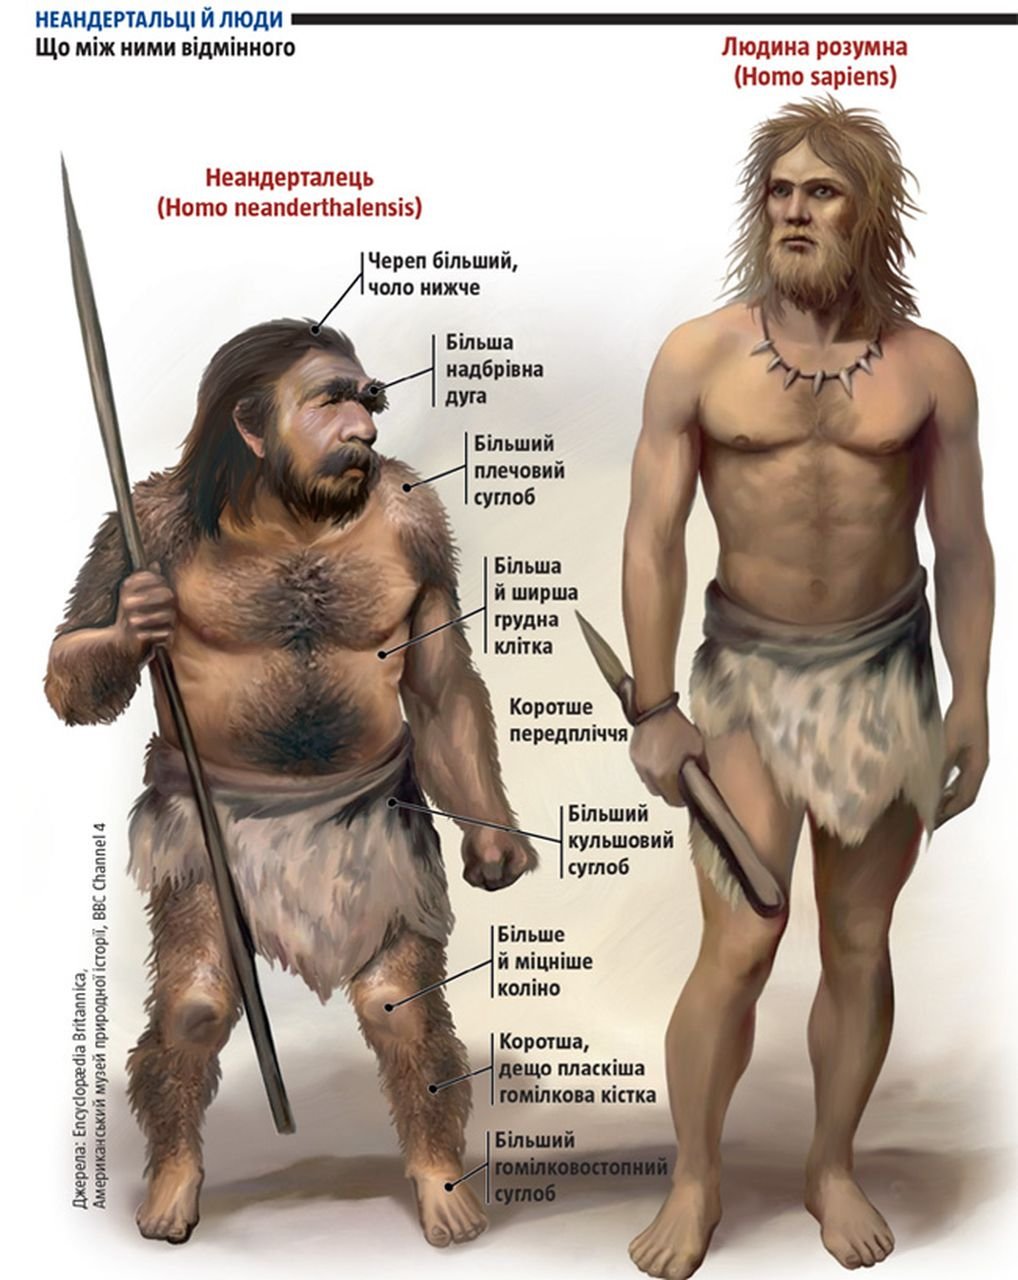 Насколько древний. Хомо сапиенс Денисовский человек неандерталец. Кроманьонец ( homo sapiens). Хомо сапиенс неандерталец кроманьонец Денисовец. Человек разумный неандерталец и кроманьонец.